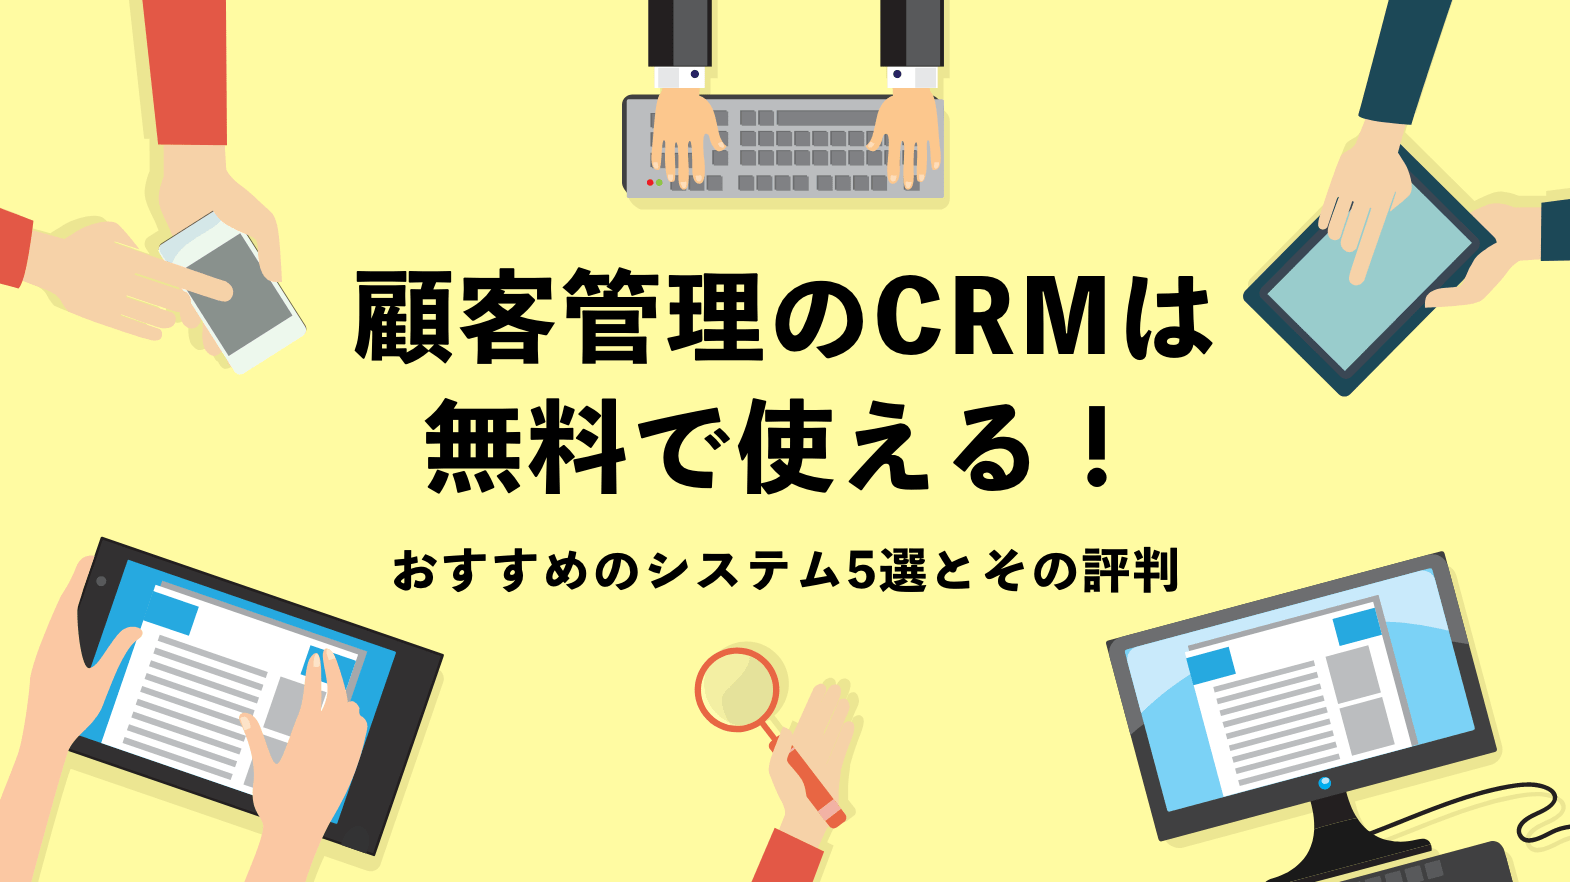 顧客管理 Crm アプリは無料で使える 定番3ツールと評判を紹介